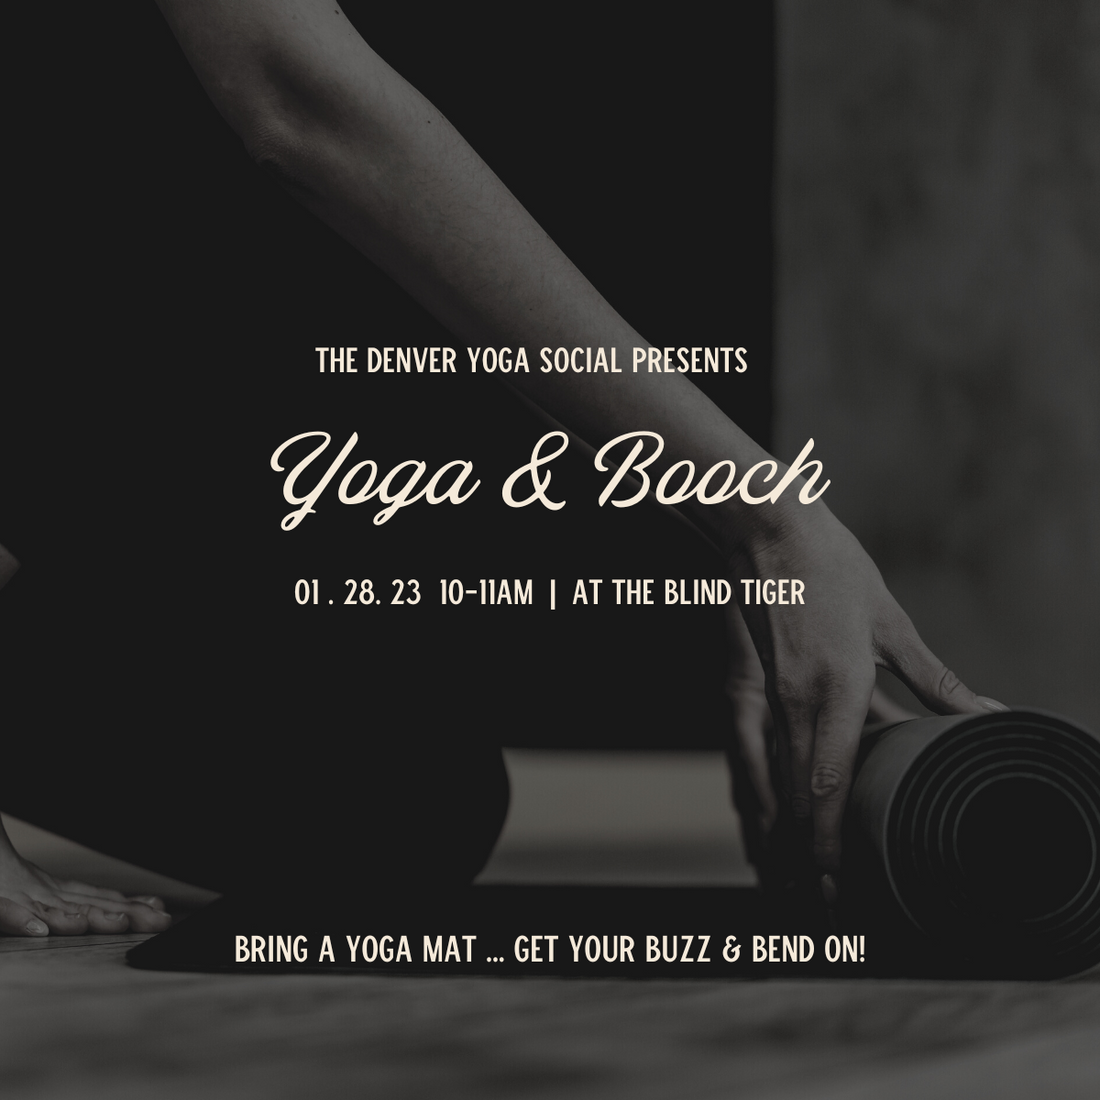 Yoga & Booch 1.28.23